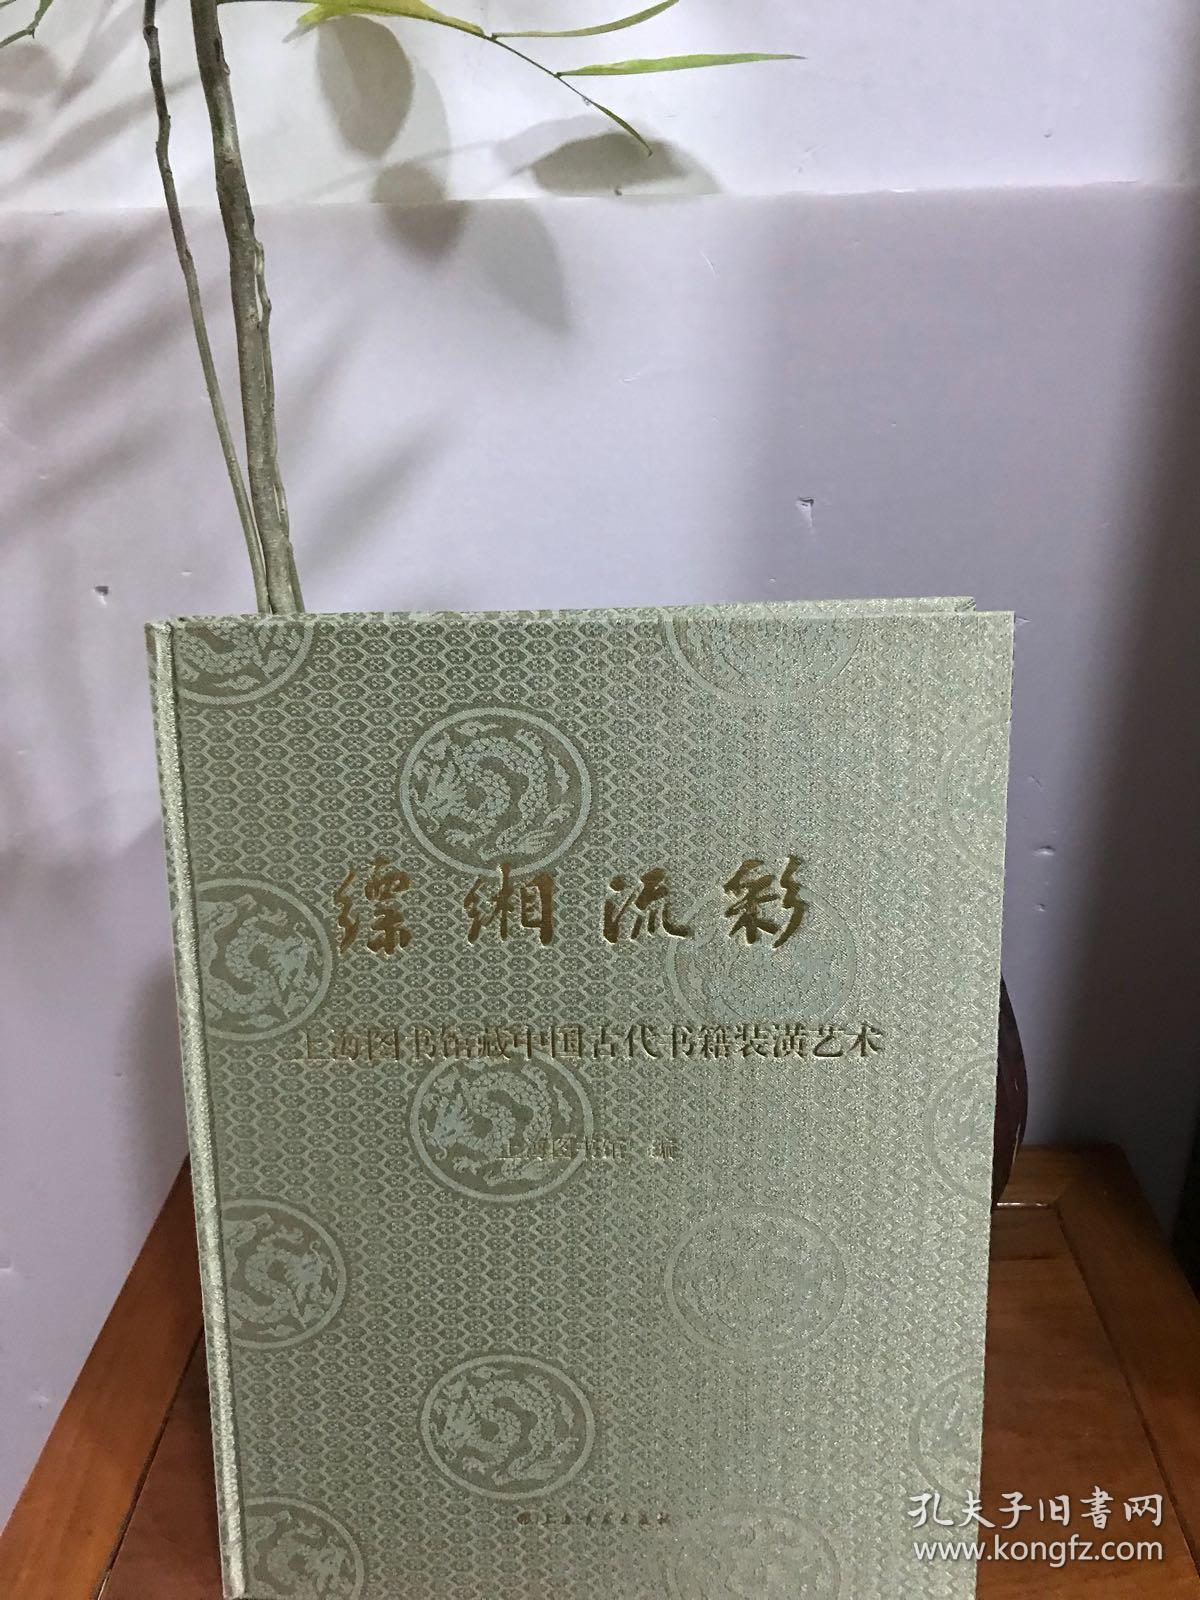 缥缃流彩 上海图书馆藏中国古代书籍装潢艺术